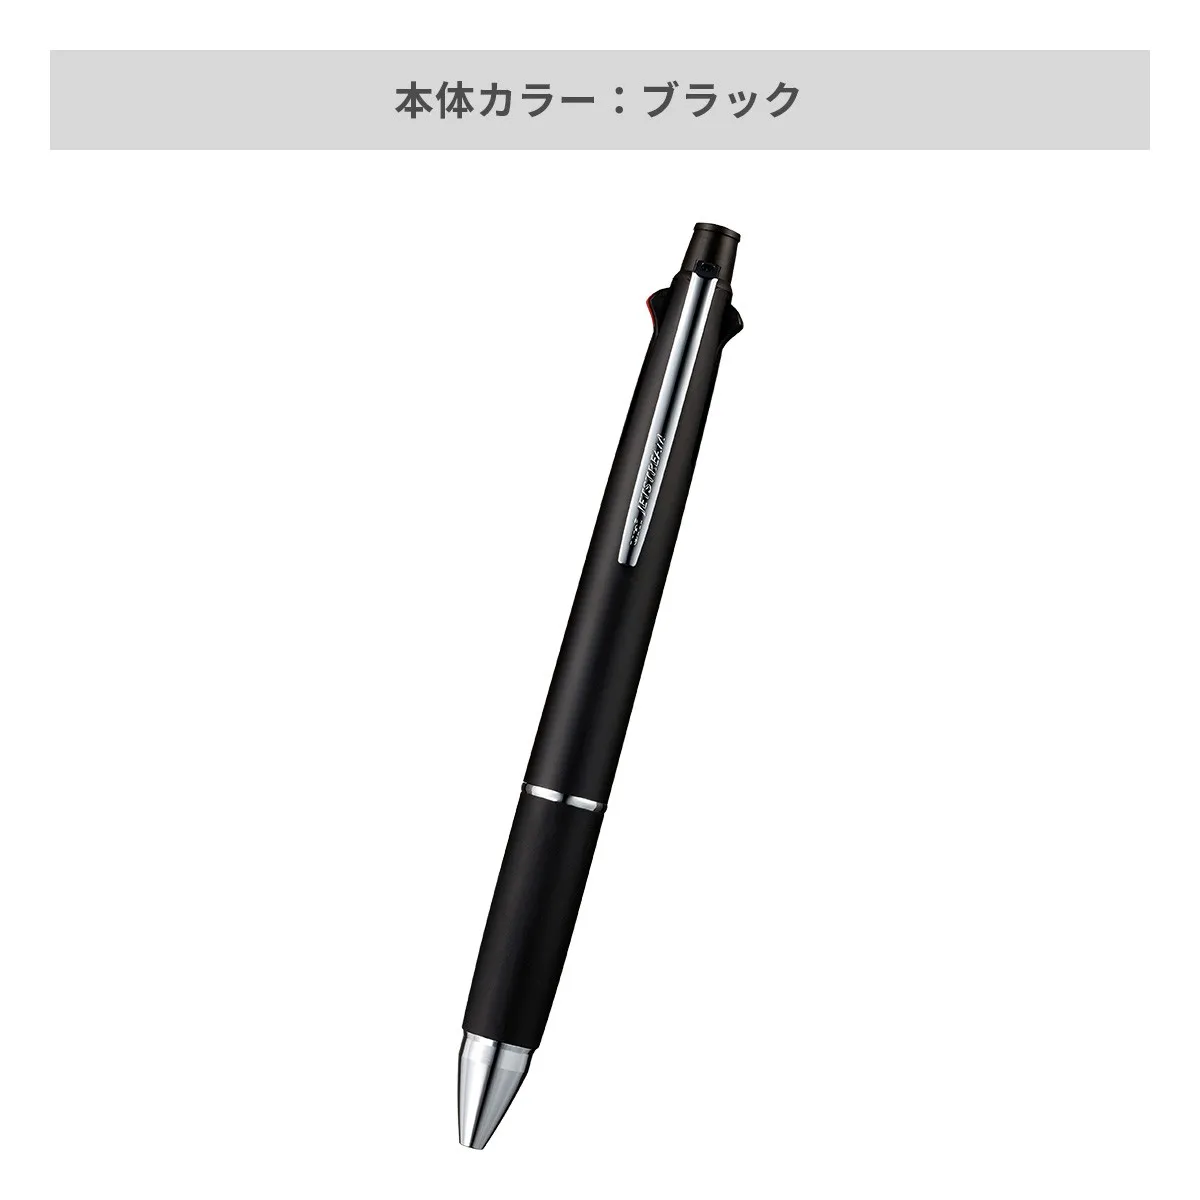 【短納期】三菱鉛筆 ジェットストリーム 多機能ペン 4&1 0.5mm【多機能ペン / レーザー彫刻】 画像3